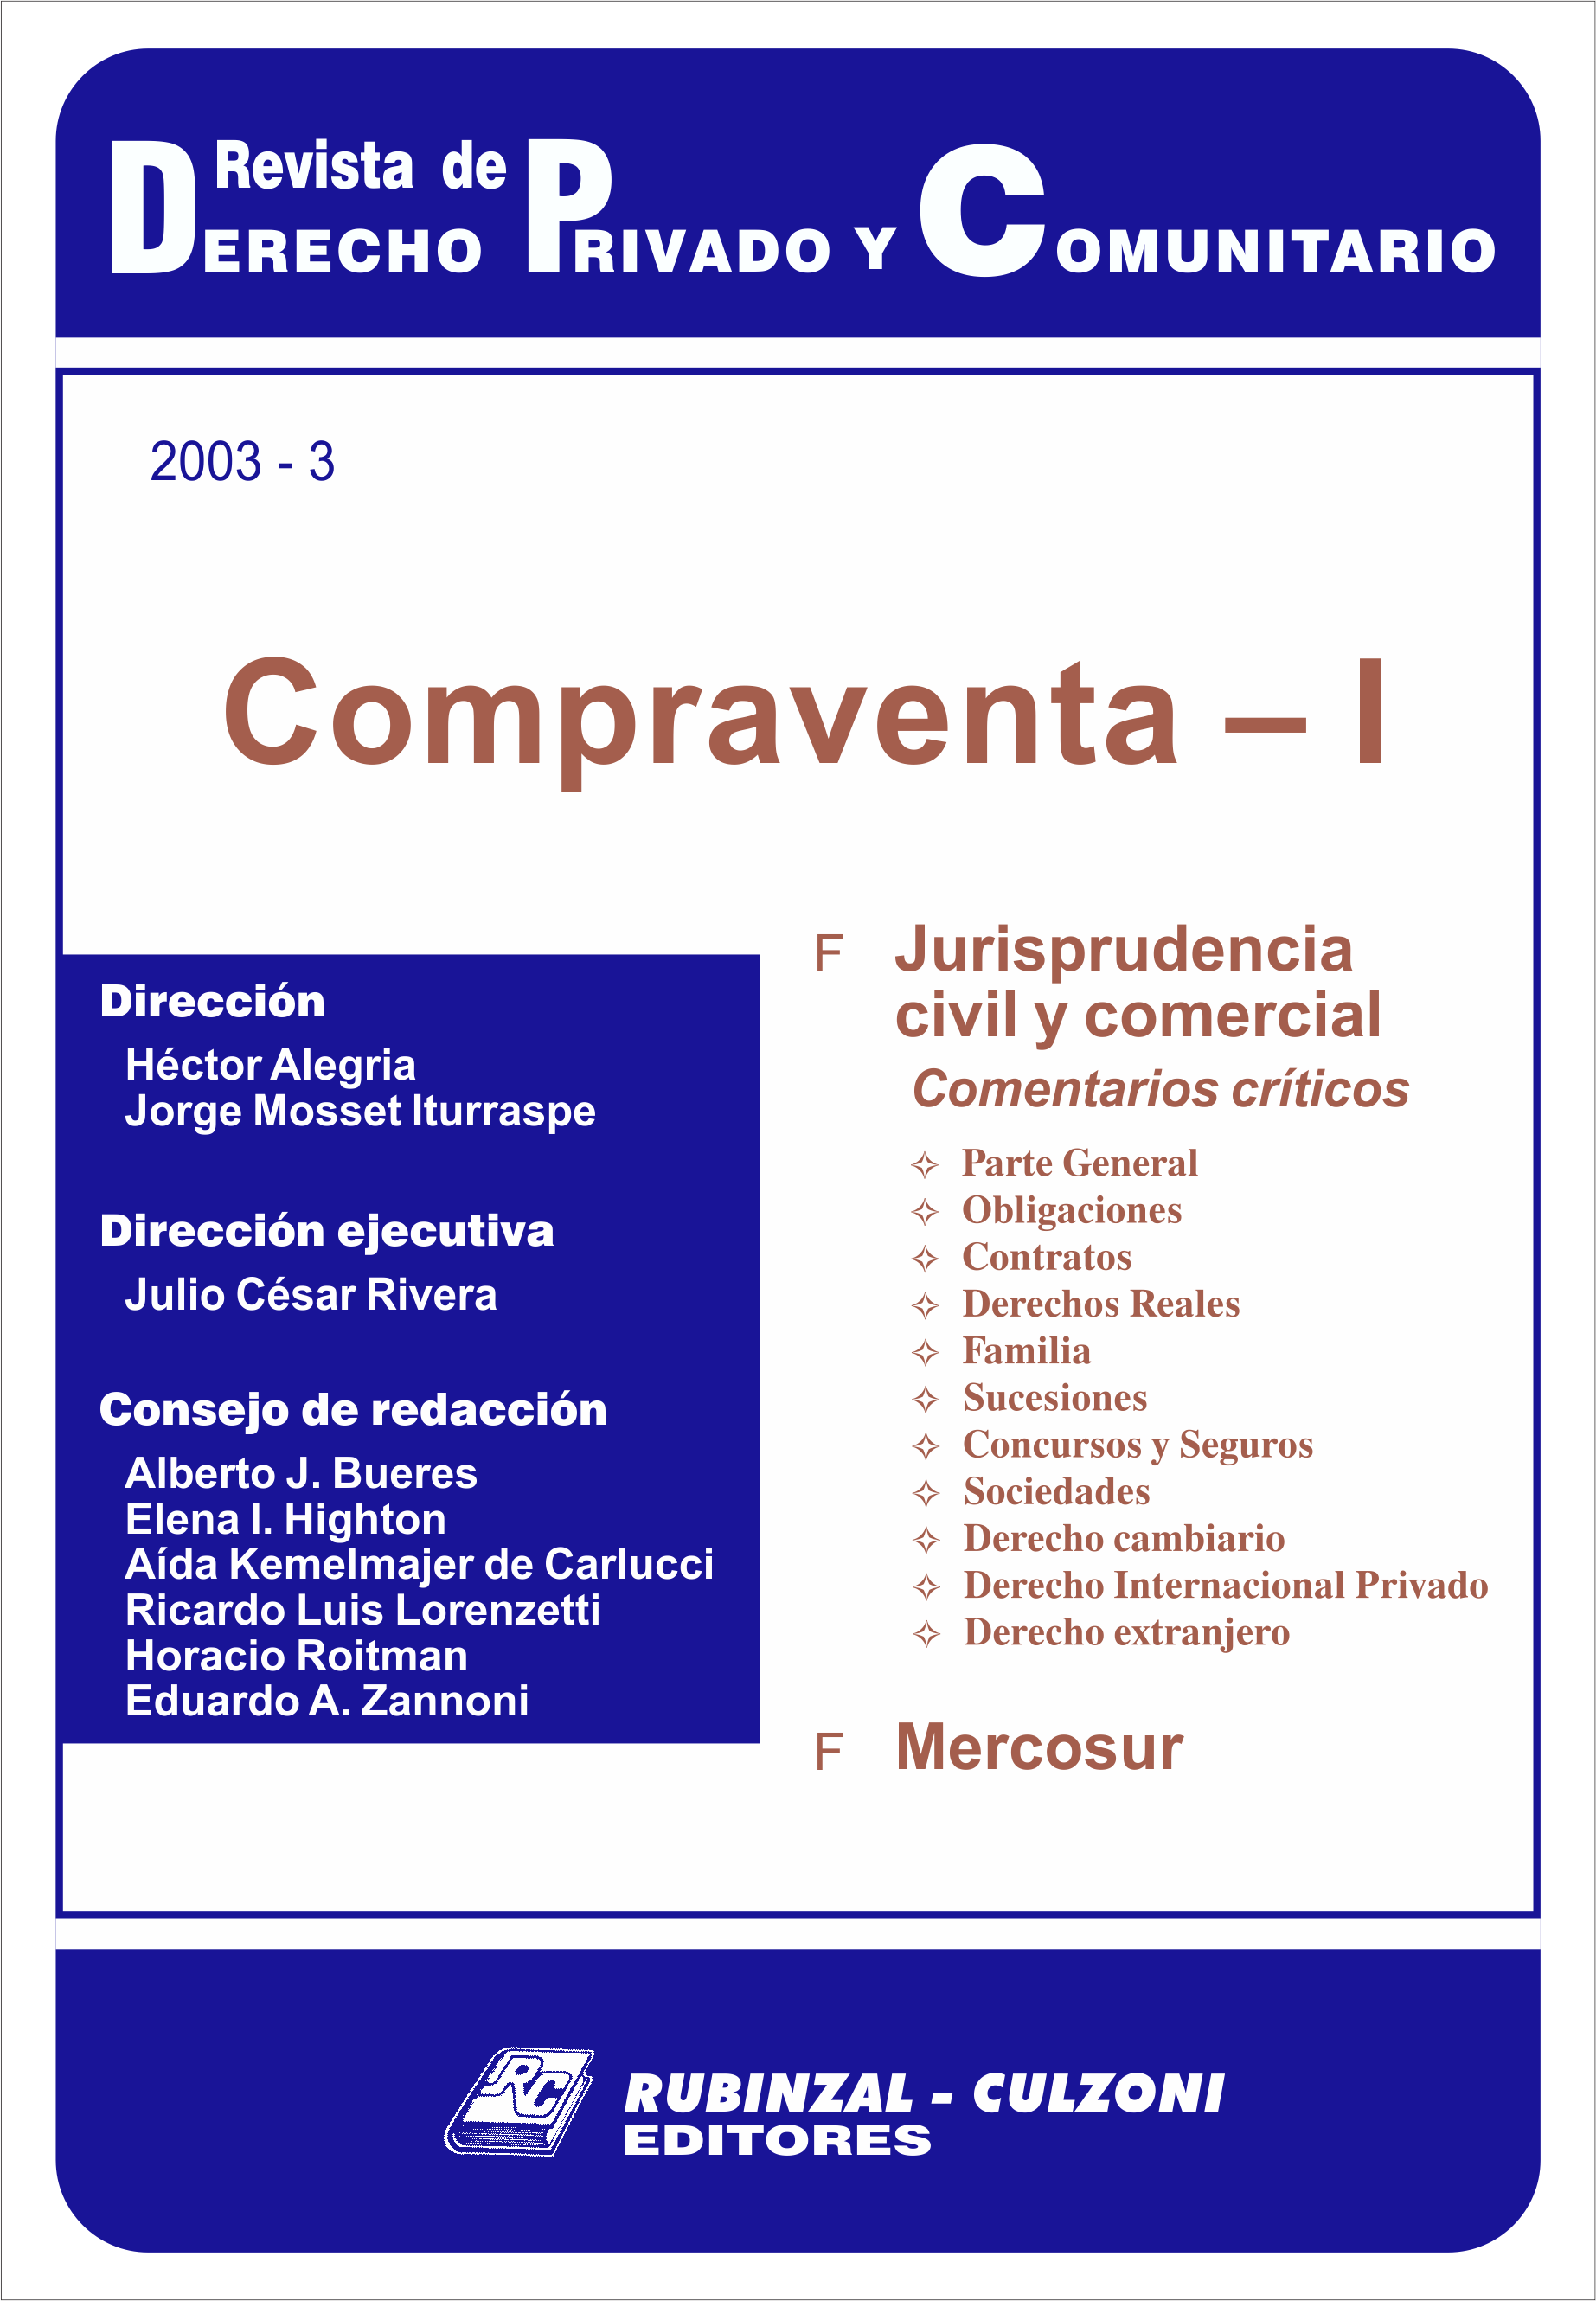 Revista de Derecho Privado y Comunitario - Compraventa - I